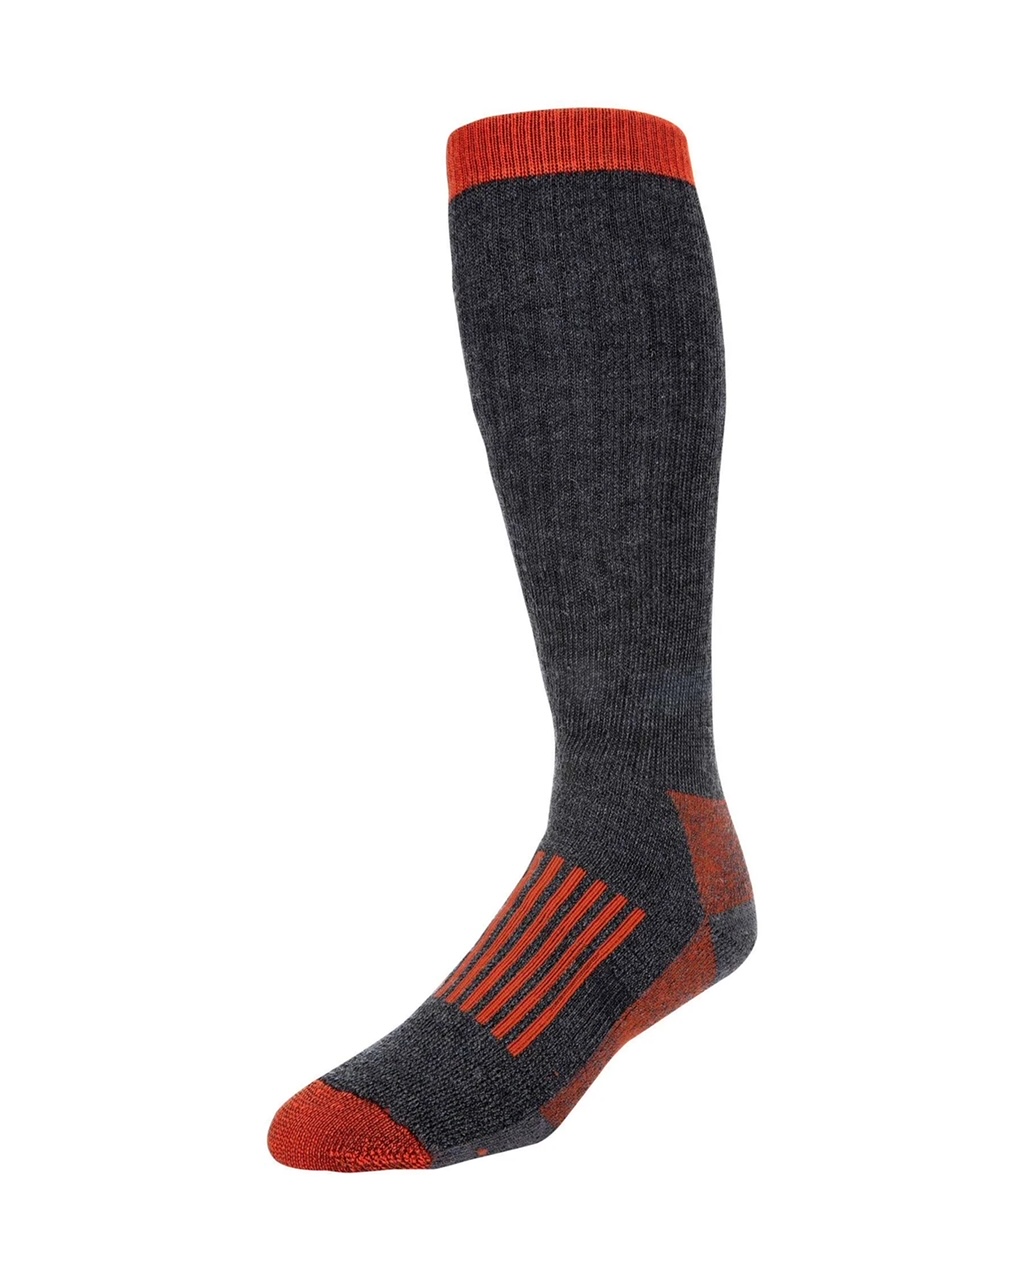 Simms M's Merino Thermal OTC Socks - Large